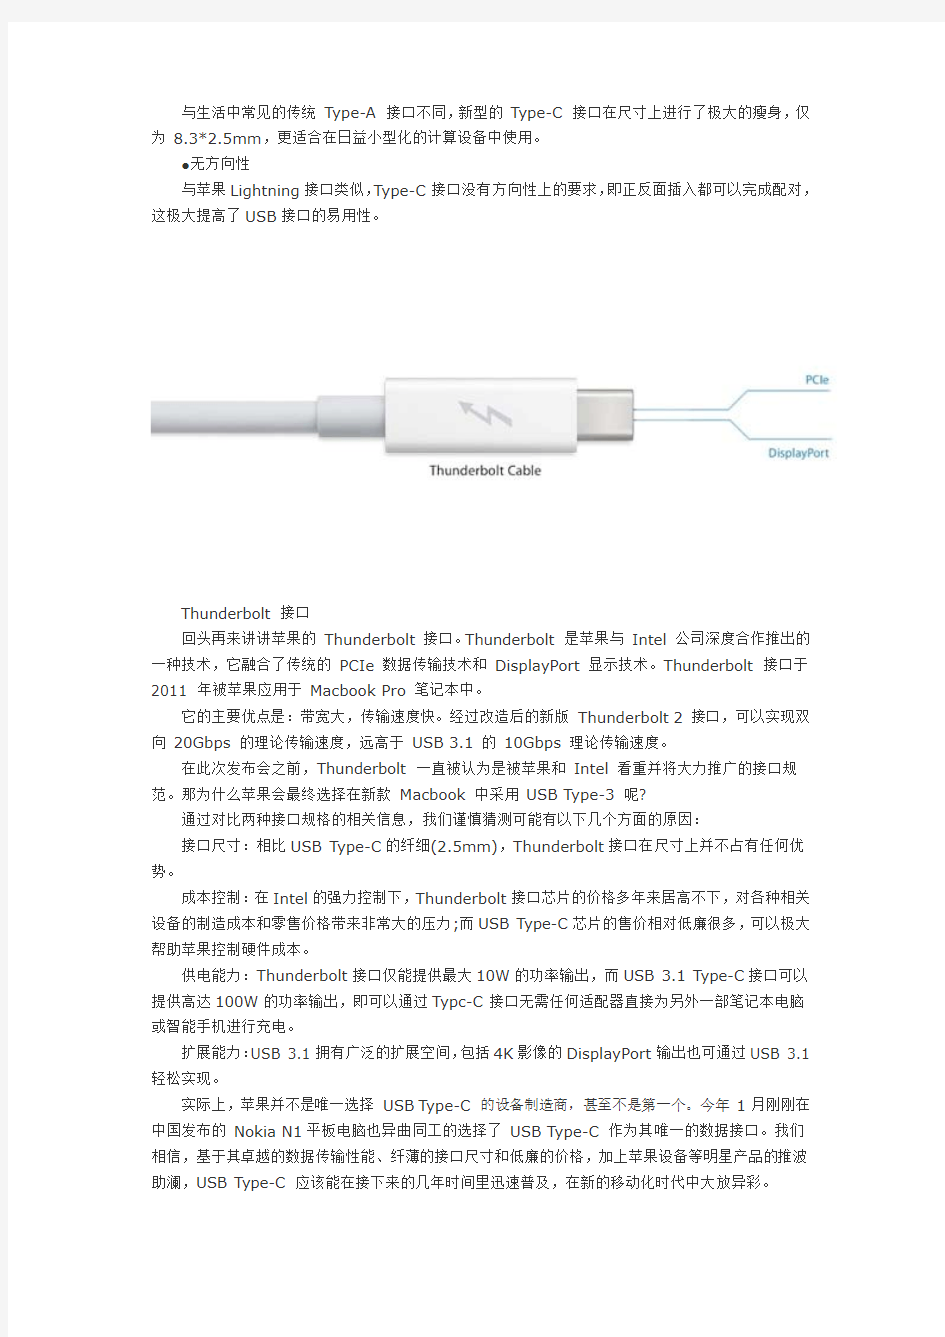 USB3.1 Type-C接口定义